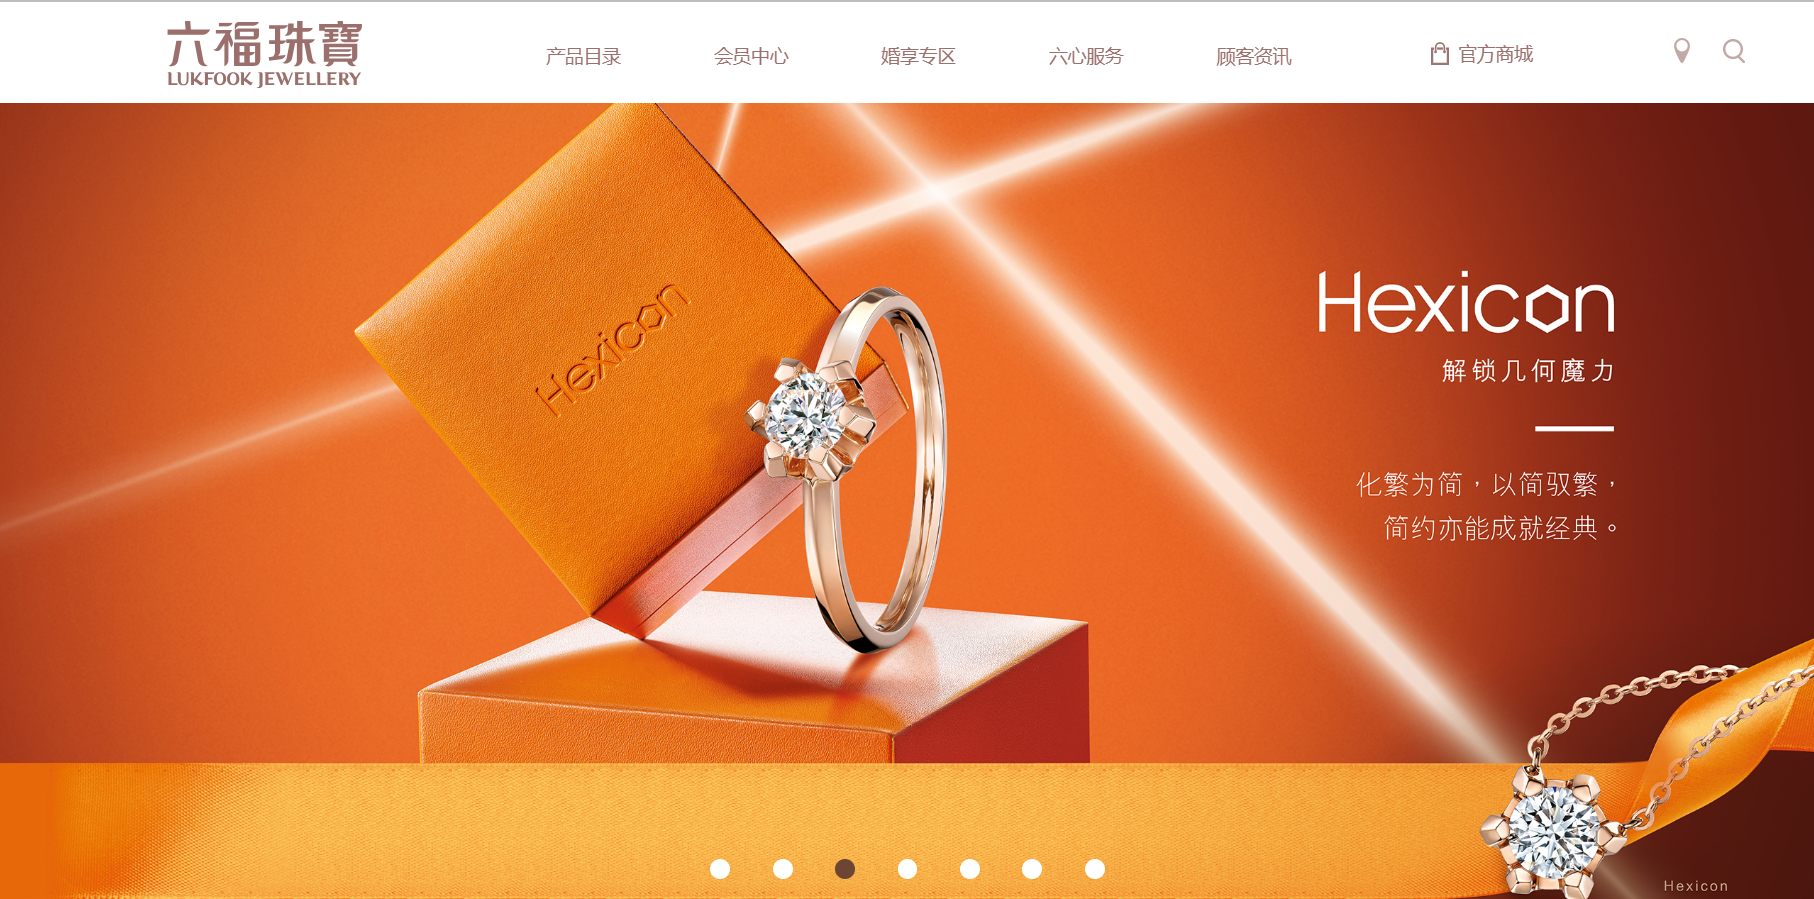 六福集团将收购香港珠宝品牌“金至尊”控制性股权